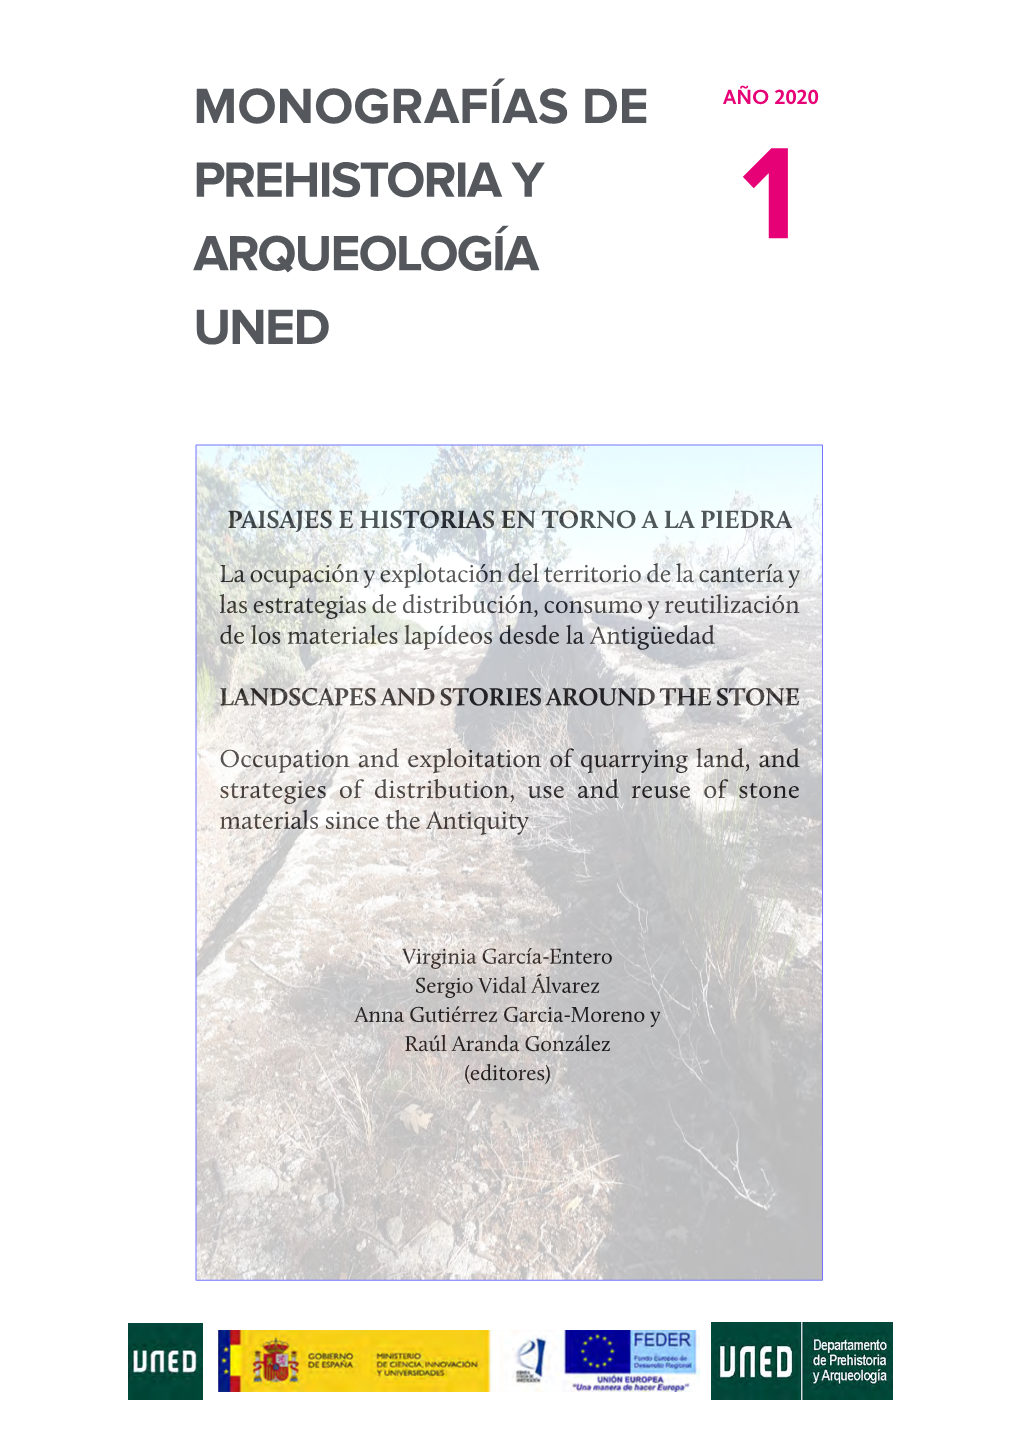 Monografías De Prehistoria Y Arqueología UNED Es Una Colección Sometida a Un Proceso De Evaluación Triple Ciega